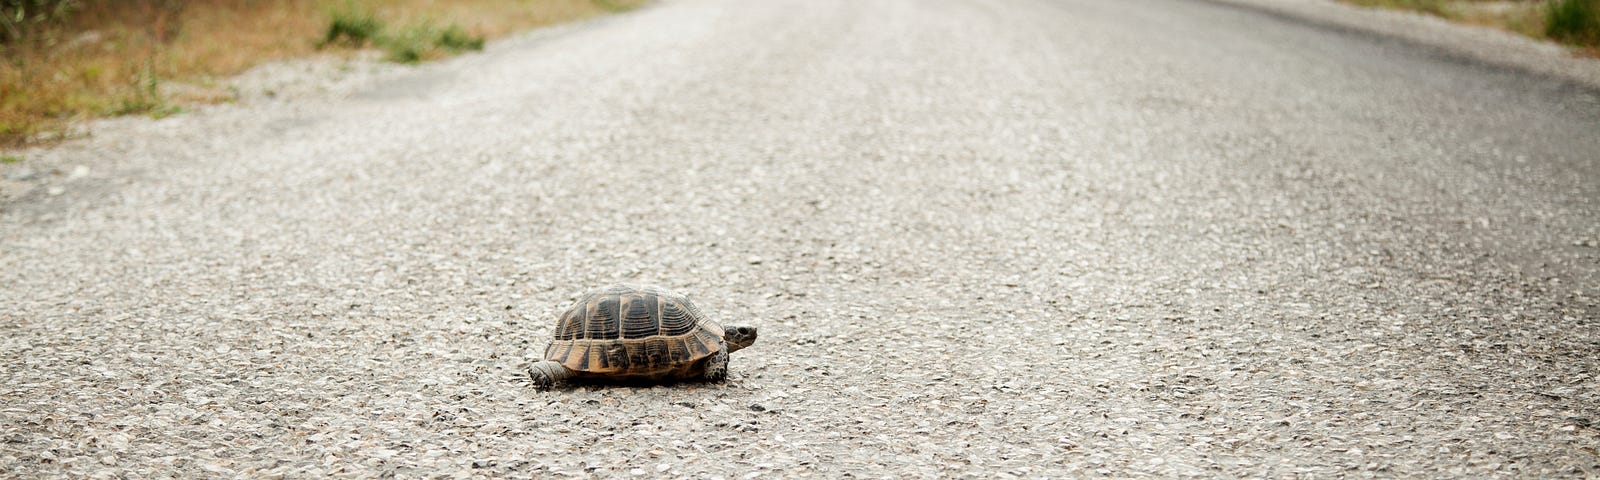 a turtle walking across an empty road